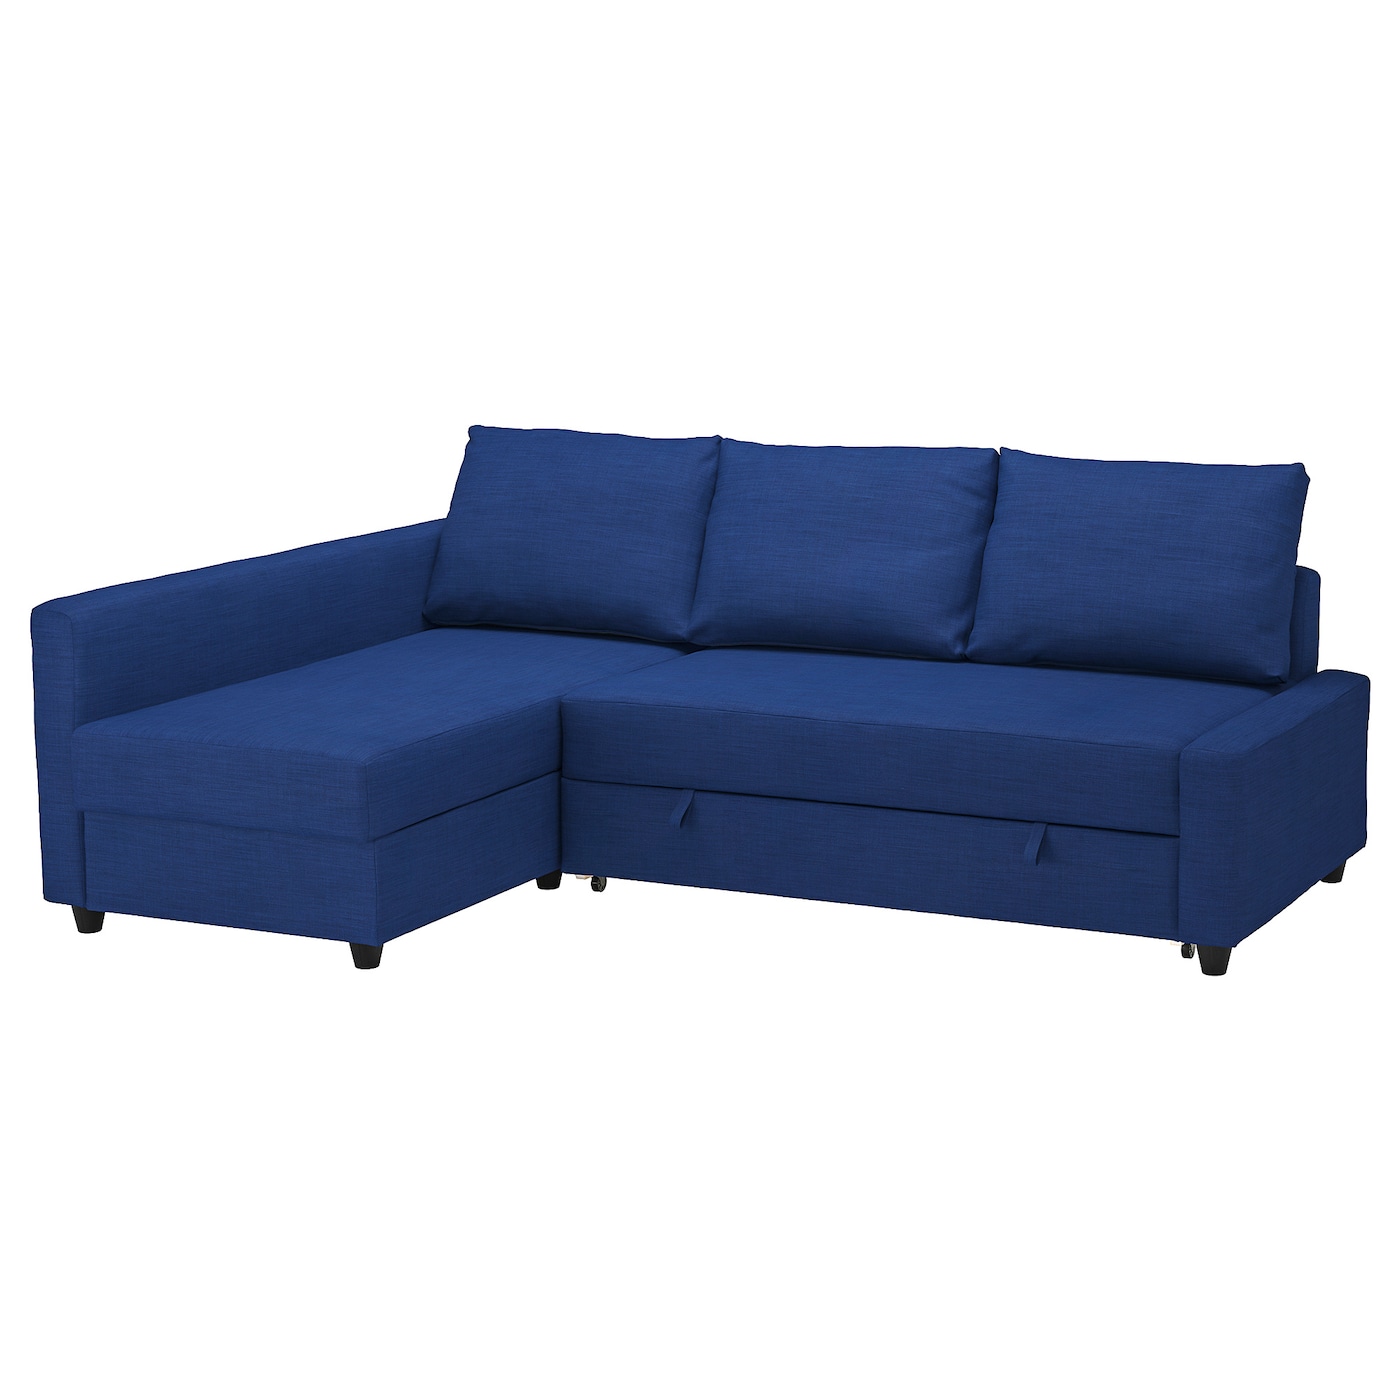 ФРИХЕТЕН Угловой диван-кровать + место для хранения, Скифтебо синий FRIHETEN IKEA